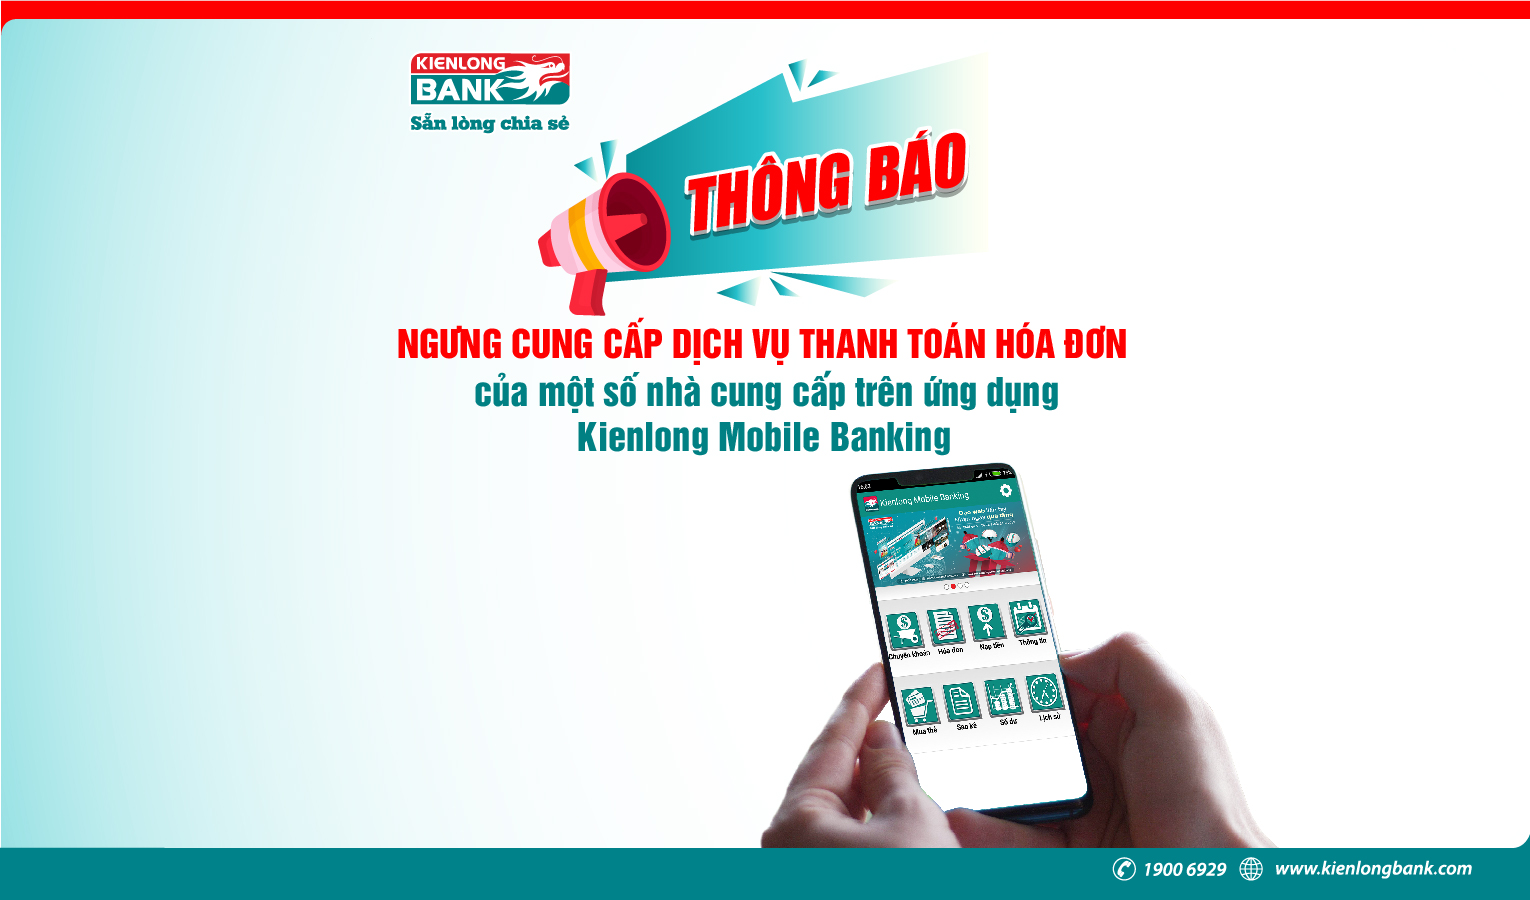 Thông báo: Ngưng cung cấp dịch vụ thanh toán hóa đơn của một số nhà cung cấp trên ứng dụng Kienlong Mobile Banking